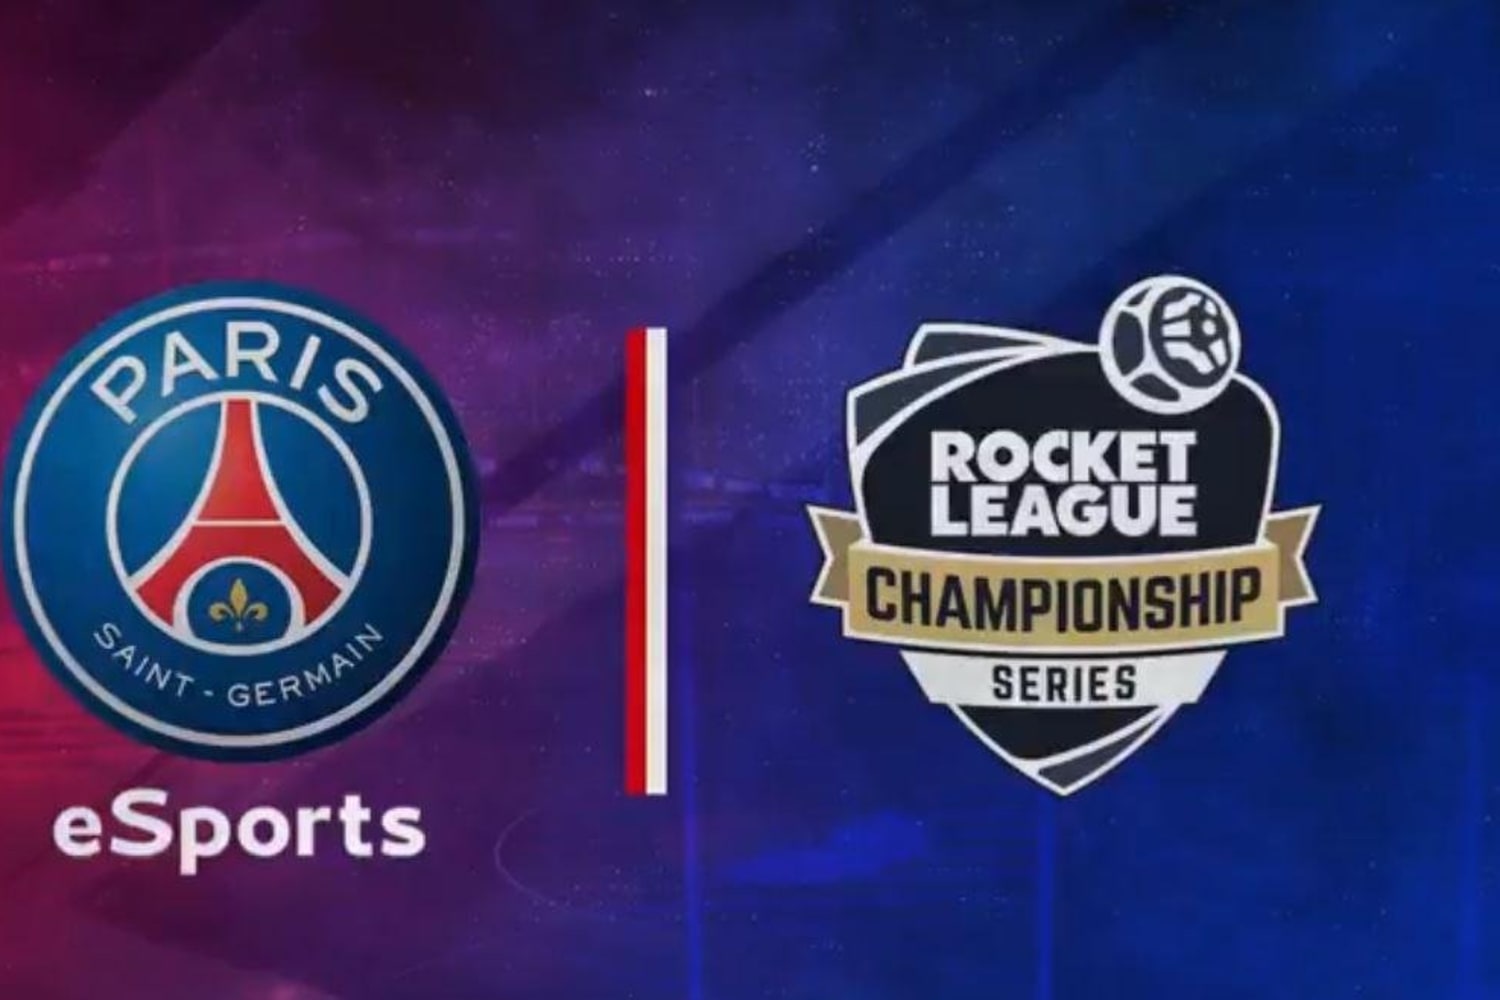 Le PSG eSports, de League of Legends à Rocket League